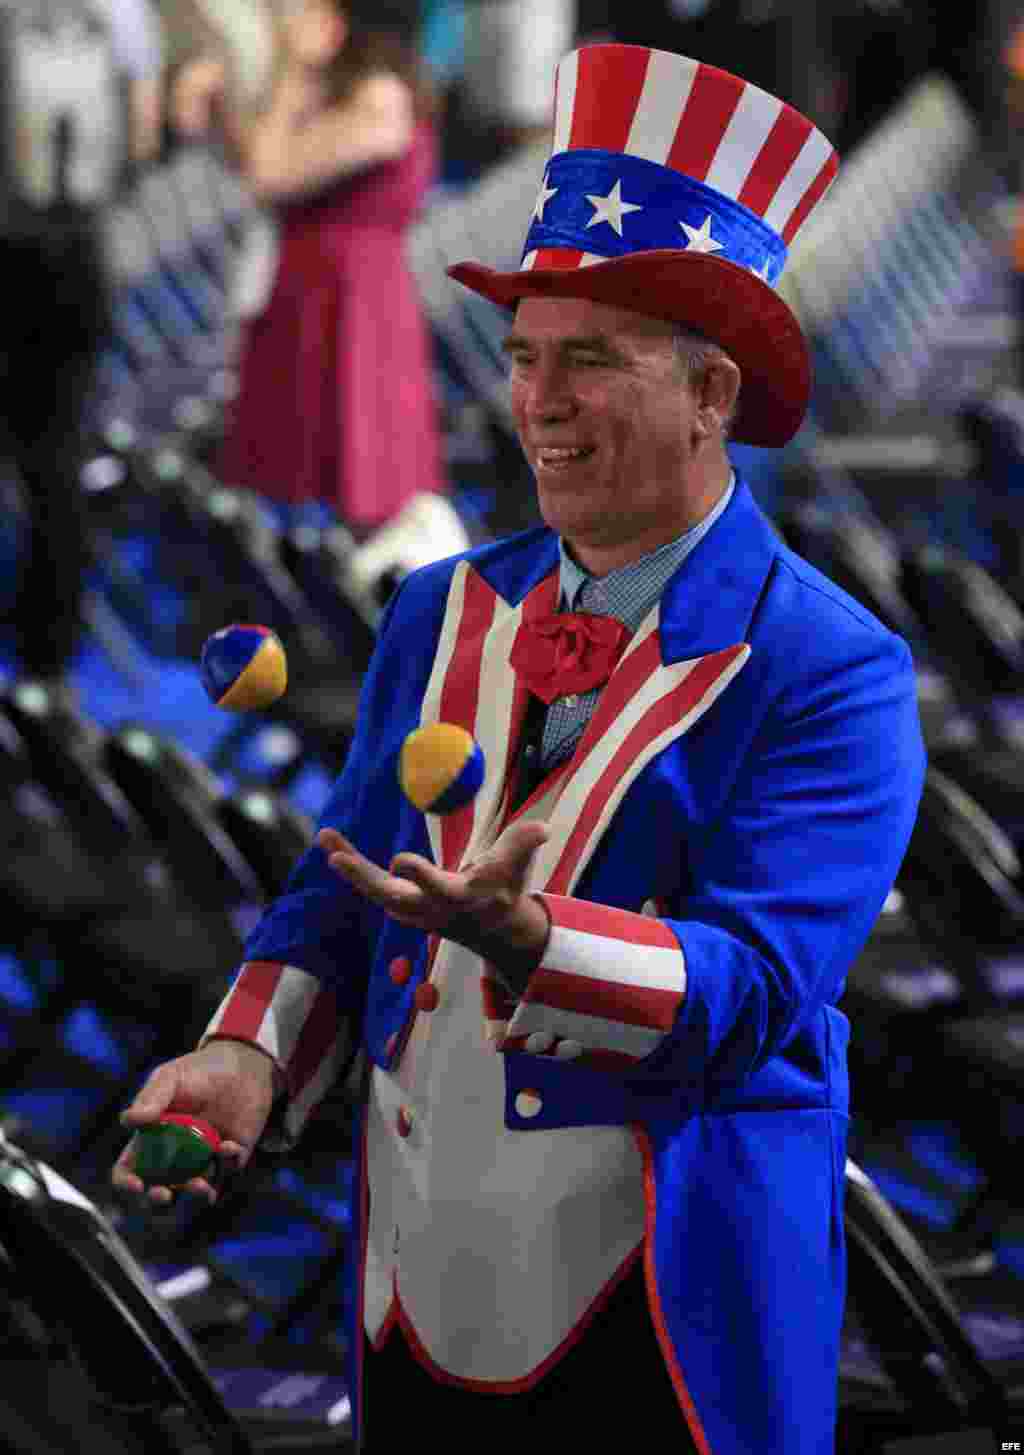 Un hombre vestido con los colores de la bandera estadounidense asiste a la primera jornada de la Convención Nacional Demócrata 2016 hoy, 25 de julio de 2016, en el Wells Fargo Center de Filadelfia, Pensilvania. EFE/TANNEN MAURY